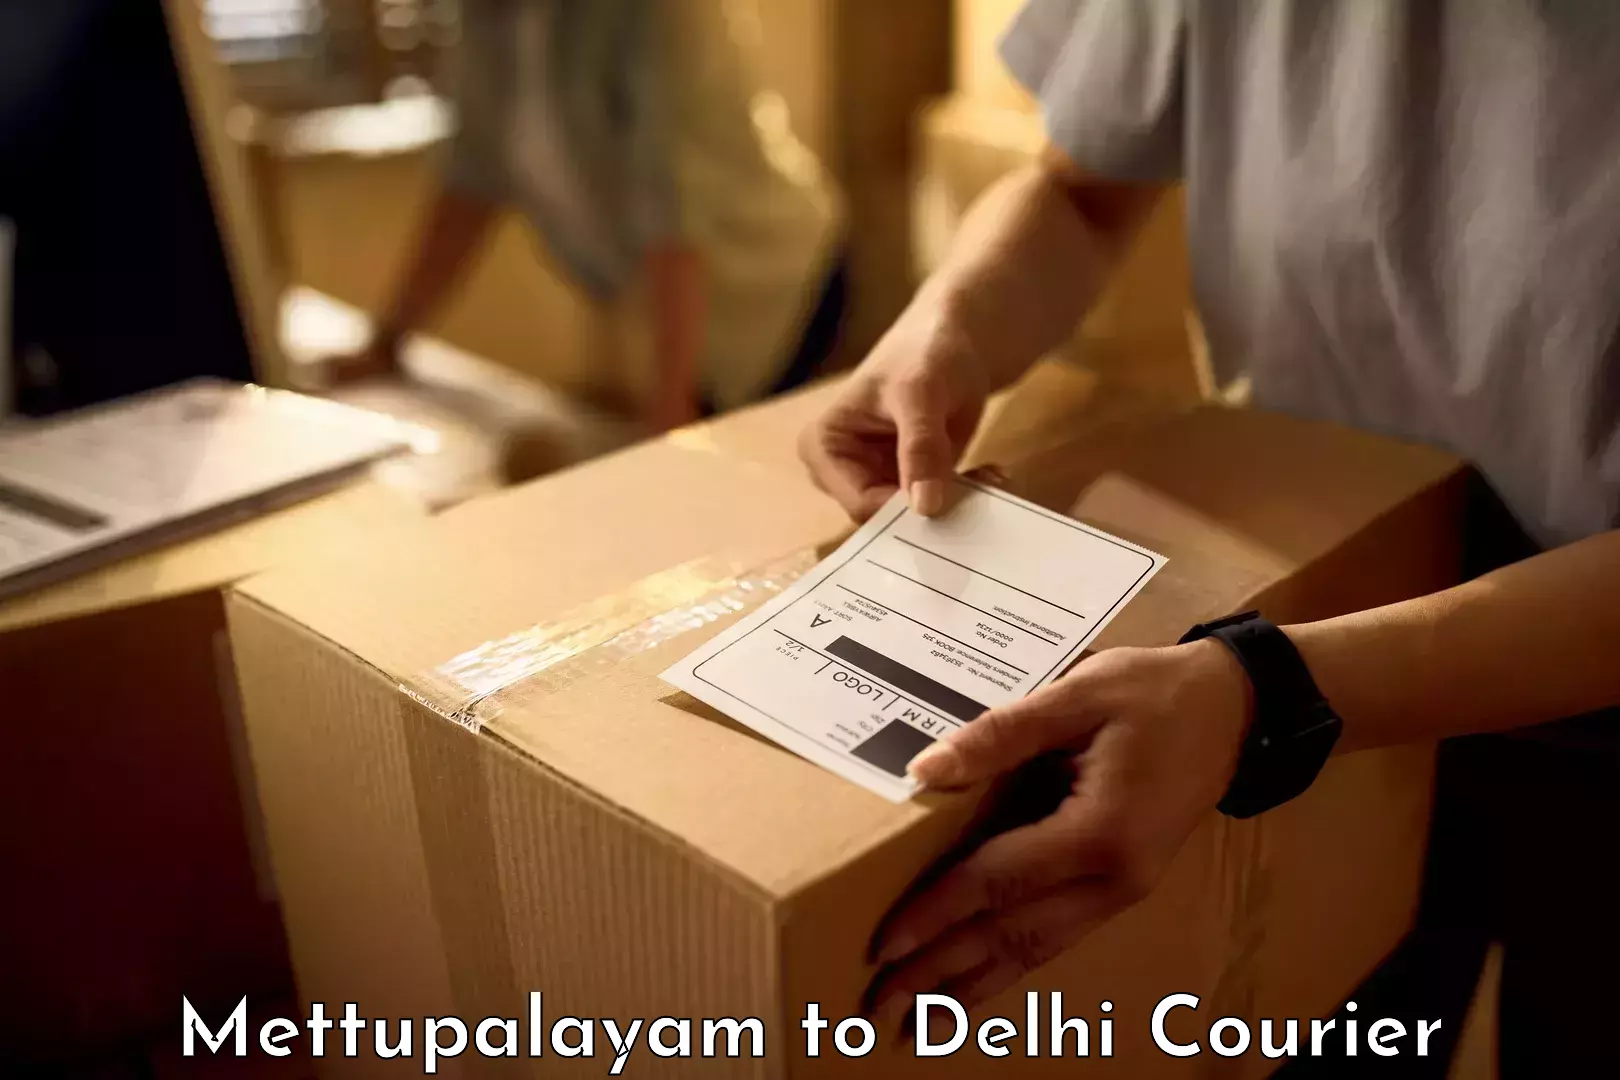 Baggage shipping service Mettupalayam to NIT Delhi